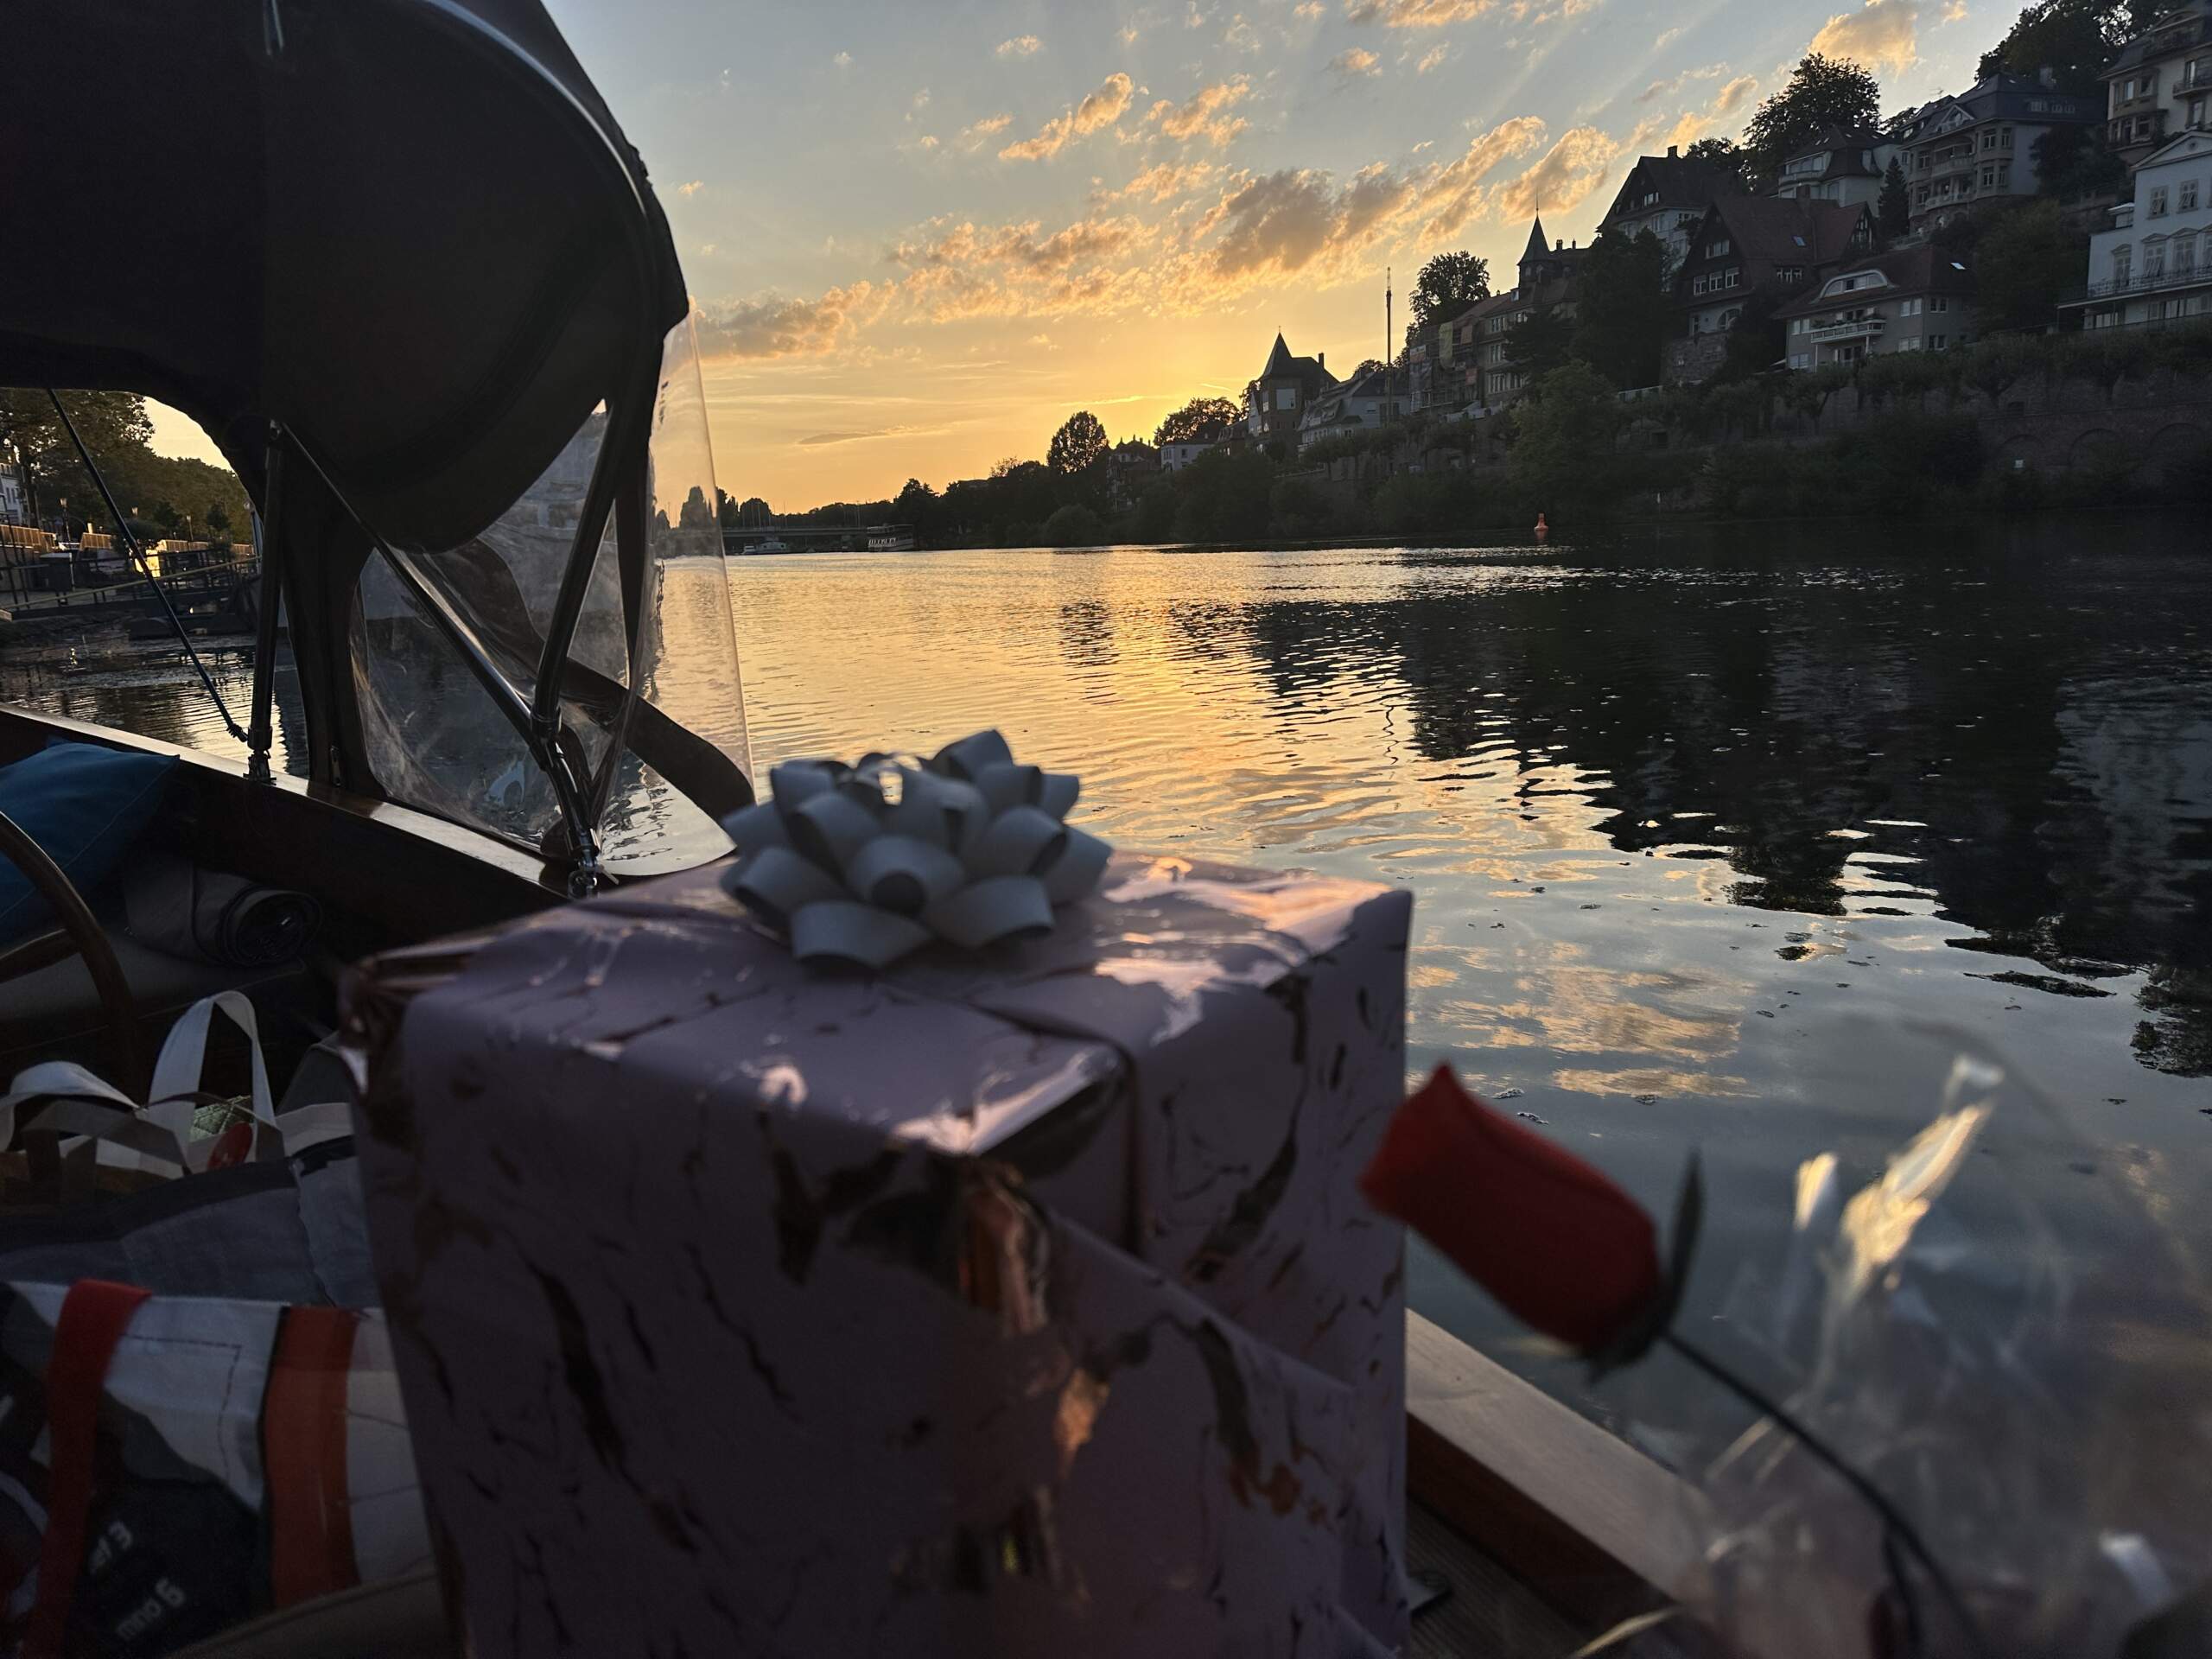 Ein Geburtstagsgeschenk liegt am Boot des Riverboats bereit, bei Sonnenuntergang auf dem Neckar